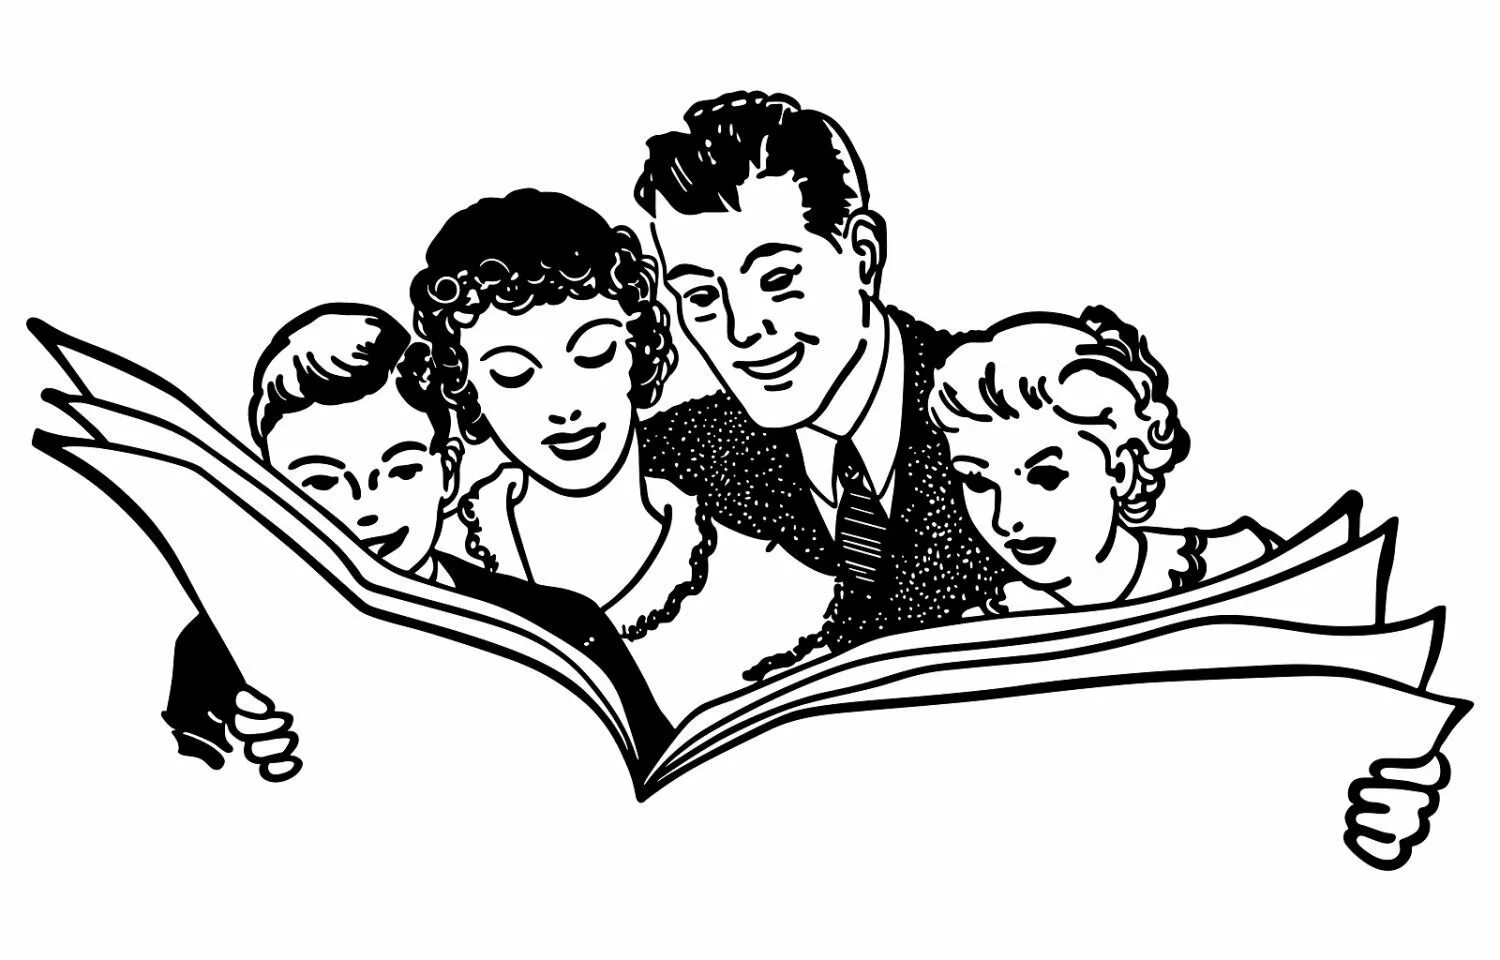 Читать человек семьи. Семейное чтение белый фон. Семейное чтение картинки для детей. Семья с книгой силуэт. Семейное чтение на прозрачном фоне.